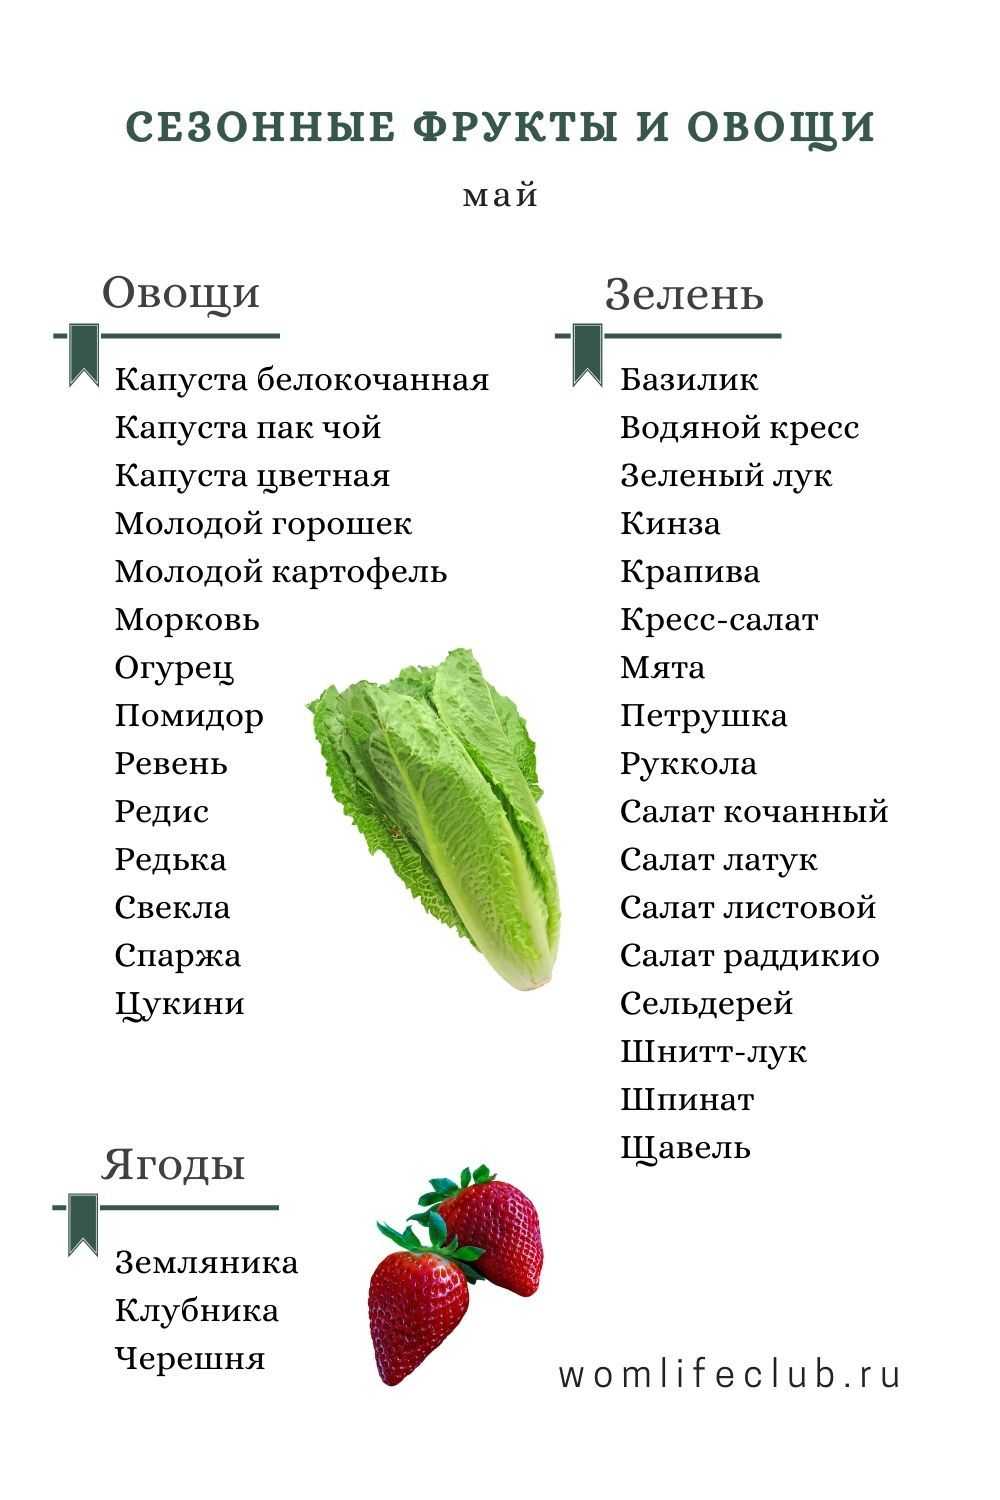 Какие овощи в мае. Сезонные фрукты и овощи по месяцам в России таблица. Сезонные фрукты. Сезонные овощи. Сезонные фрукты и овощи в мае.